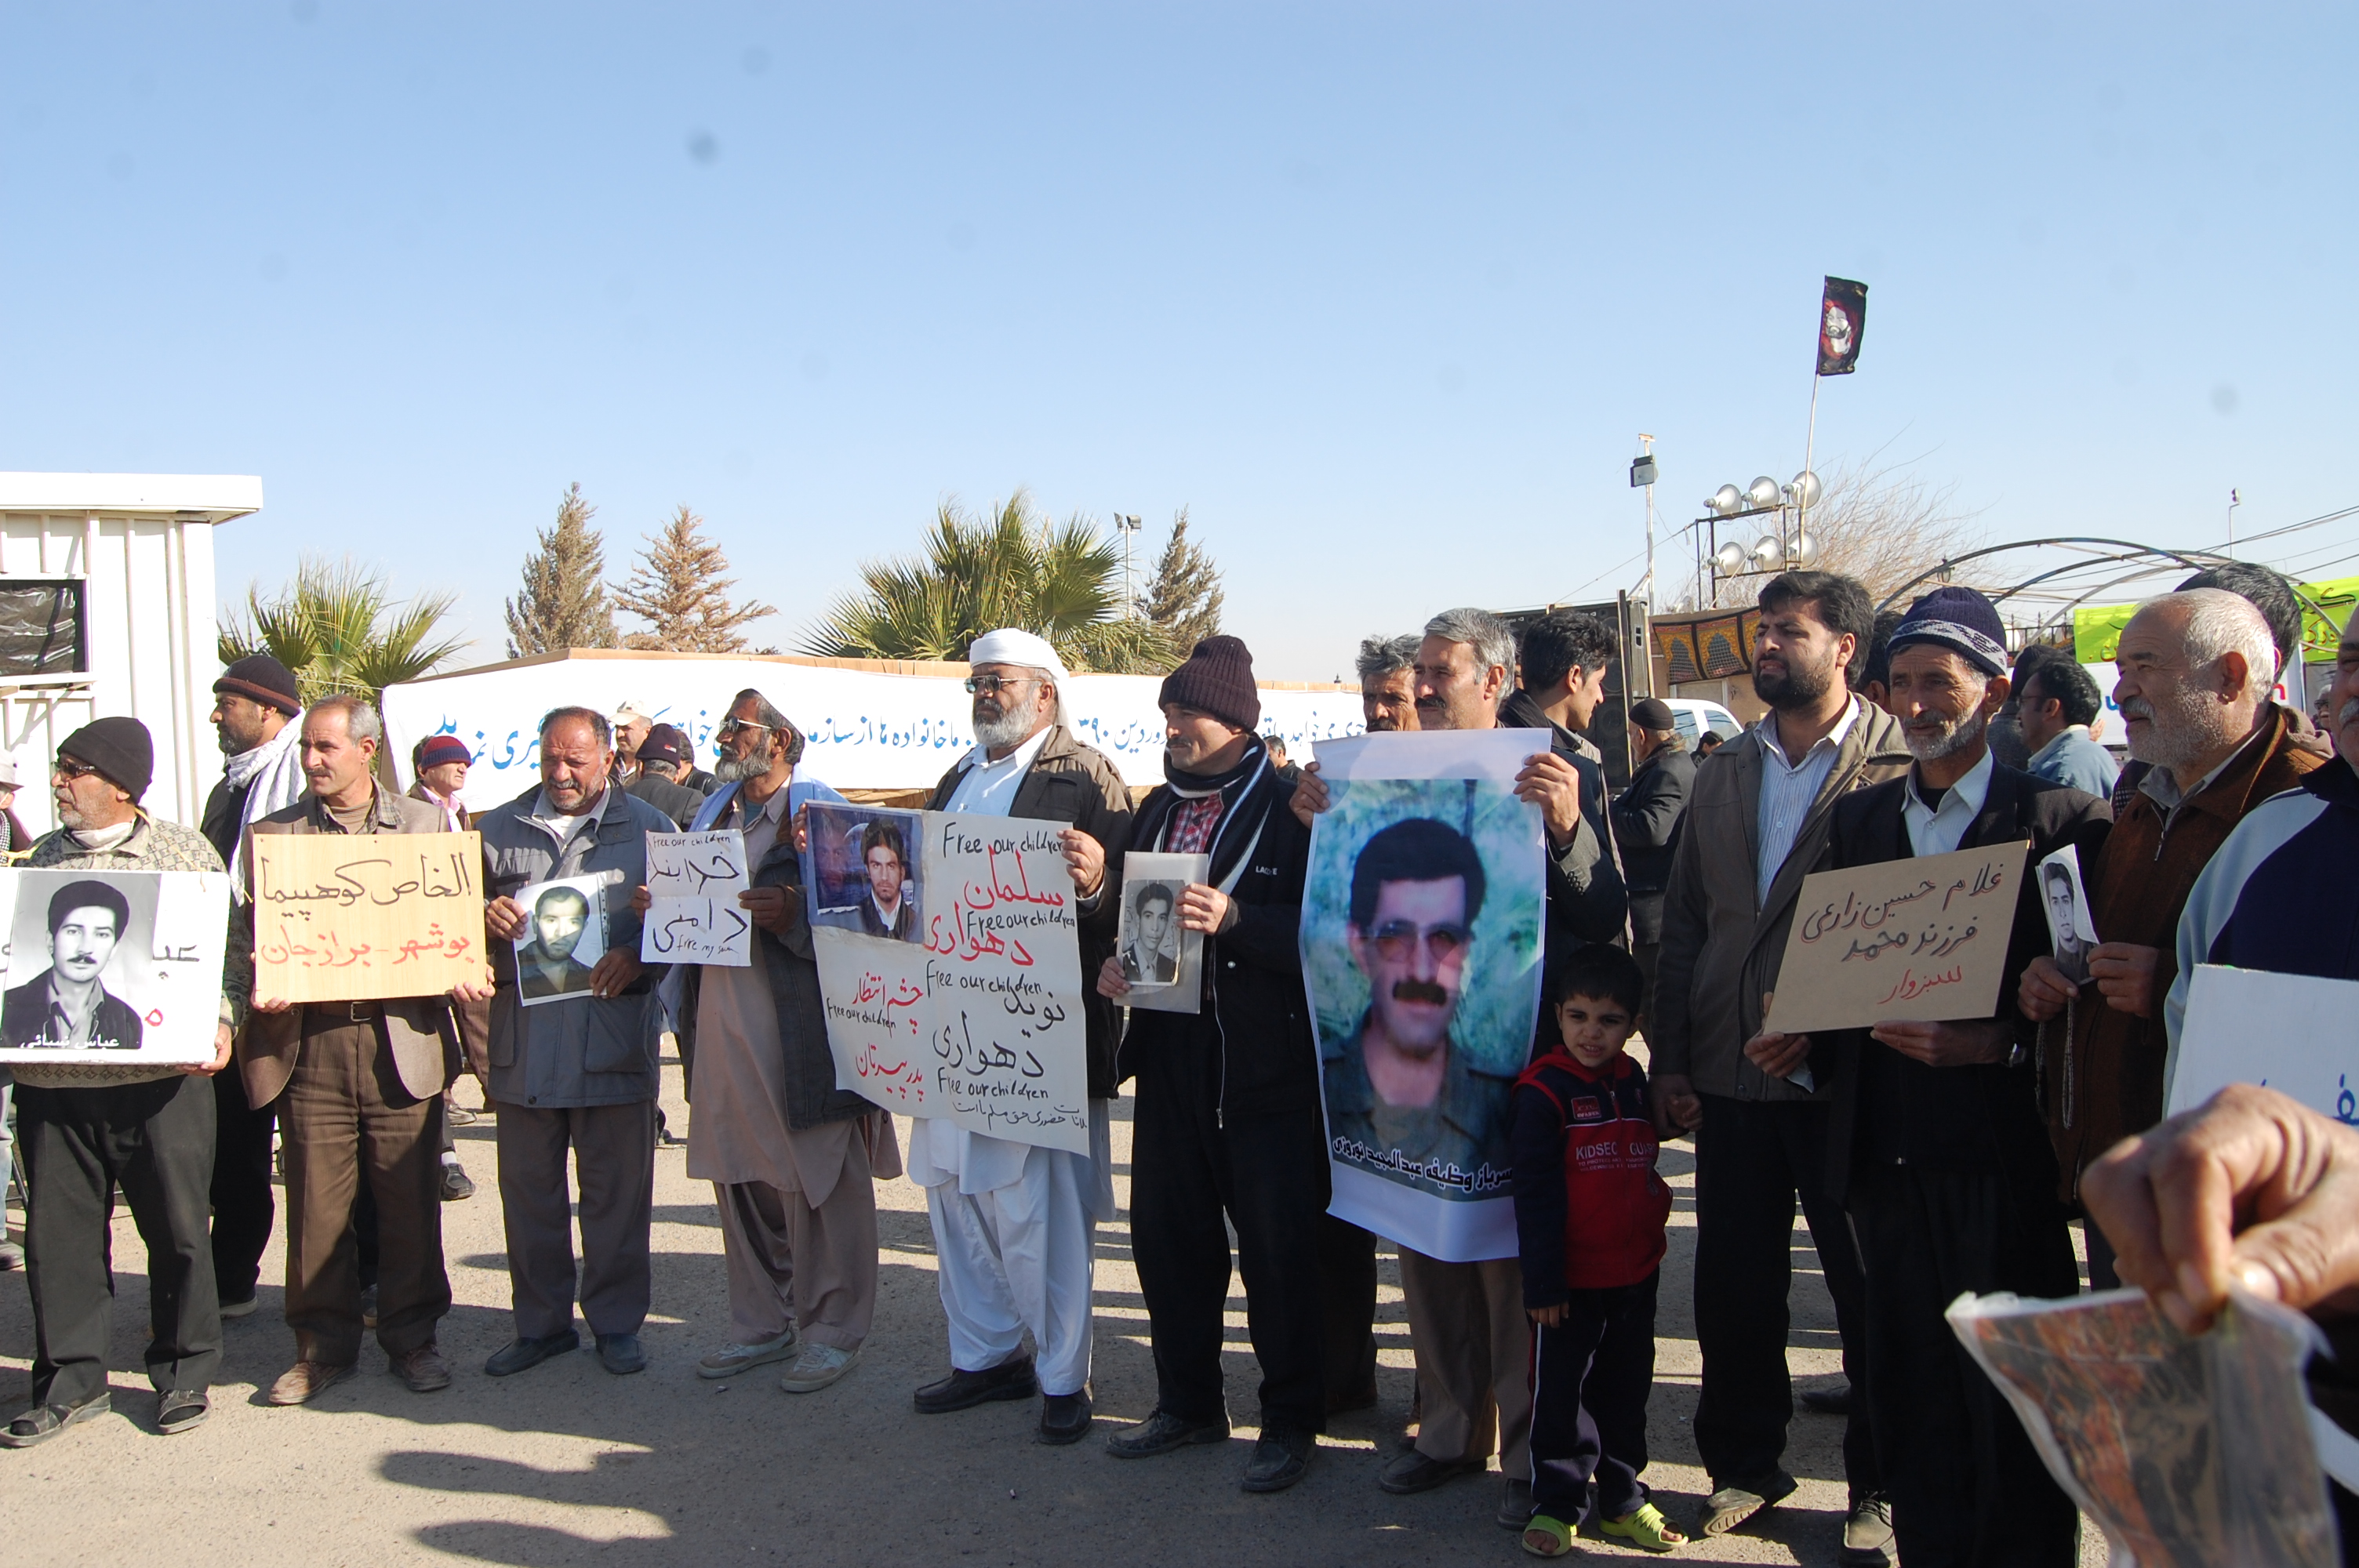 نامه خانواده های خوزستانی به سازمان های بین المللی: ما خواهان ملاقات با اسیران این فرقه درکشورآلبانی هستیم